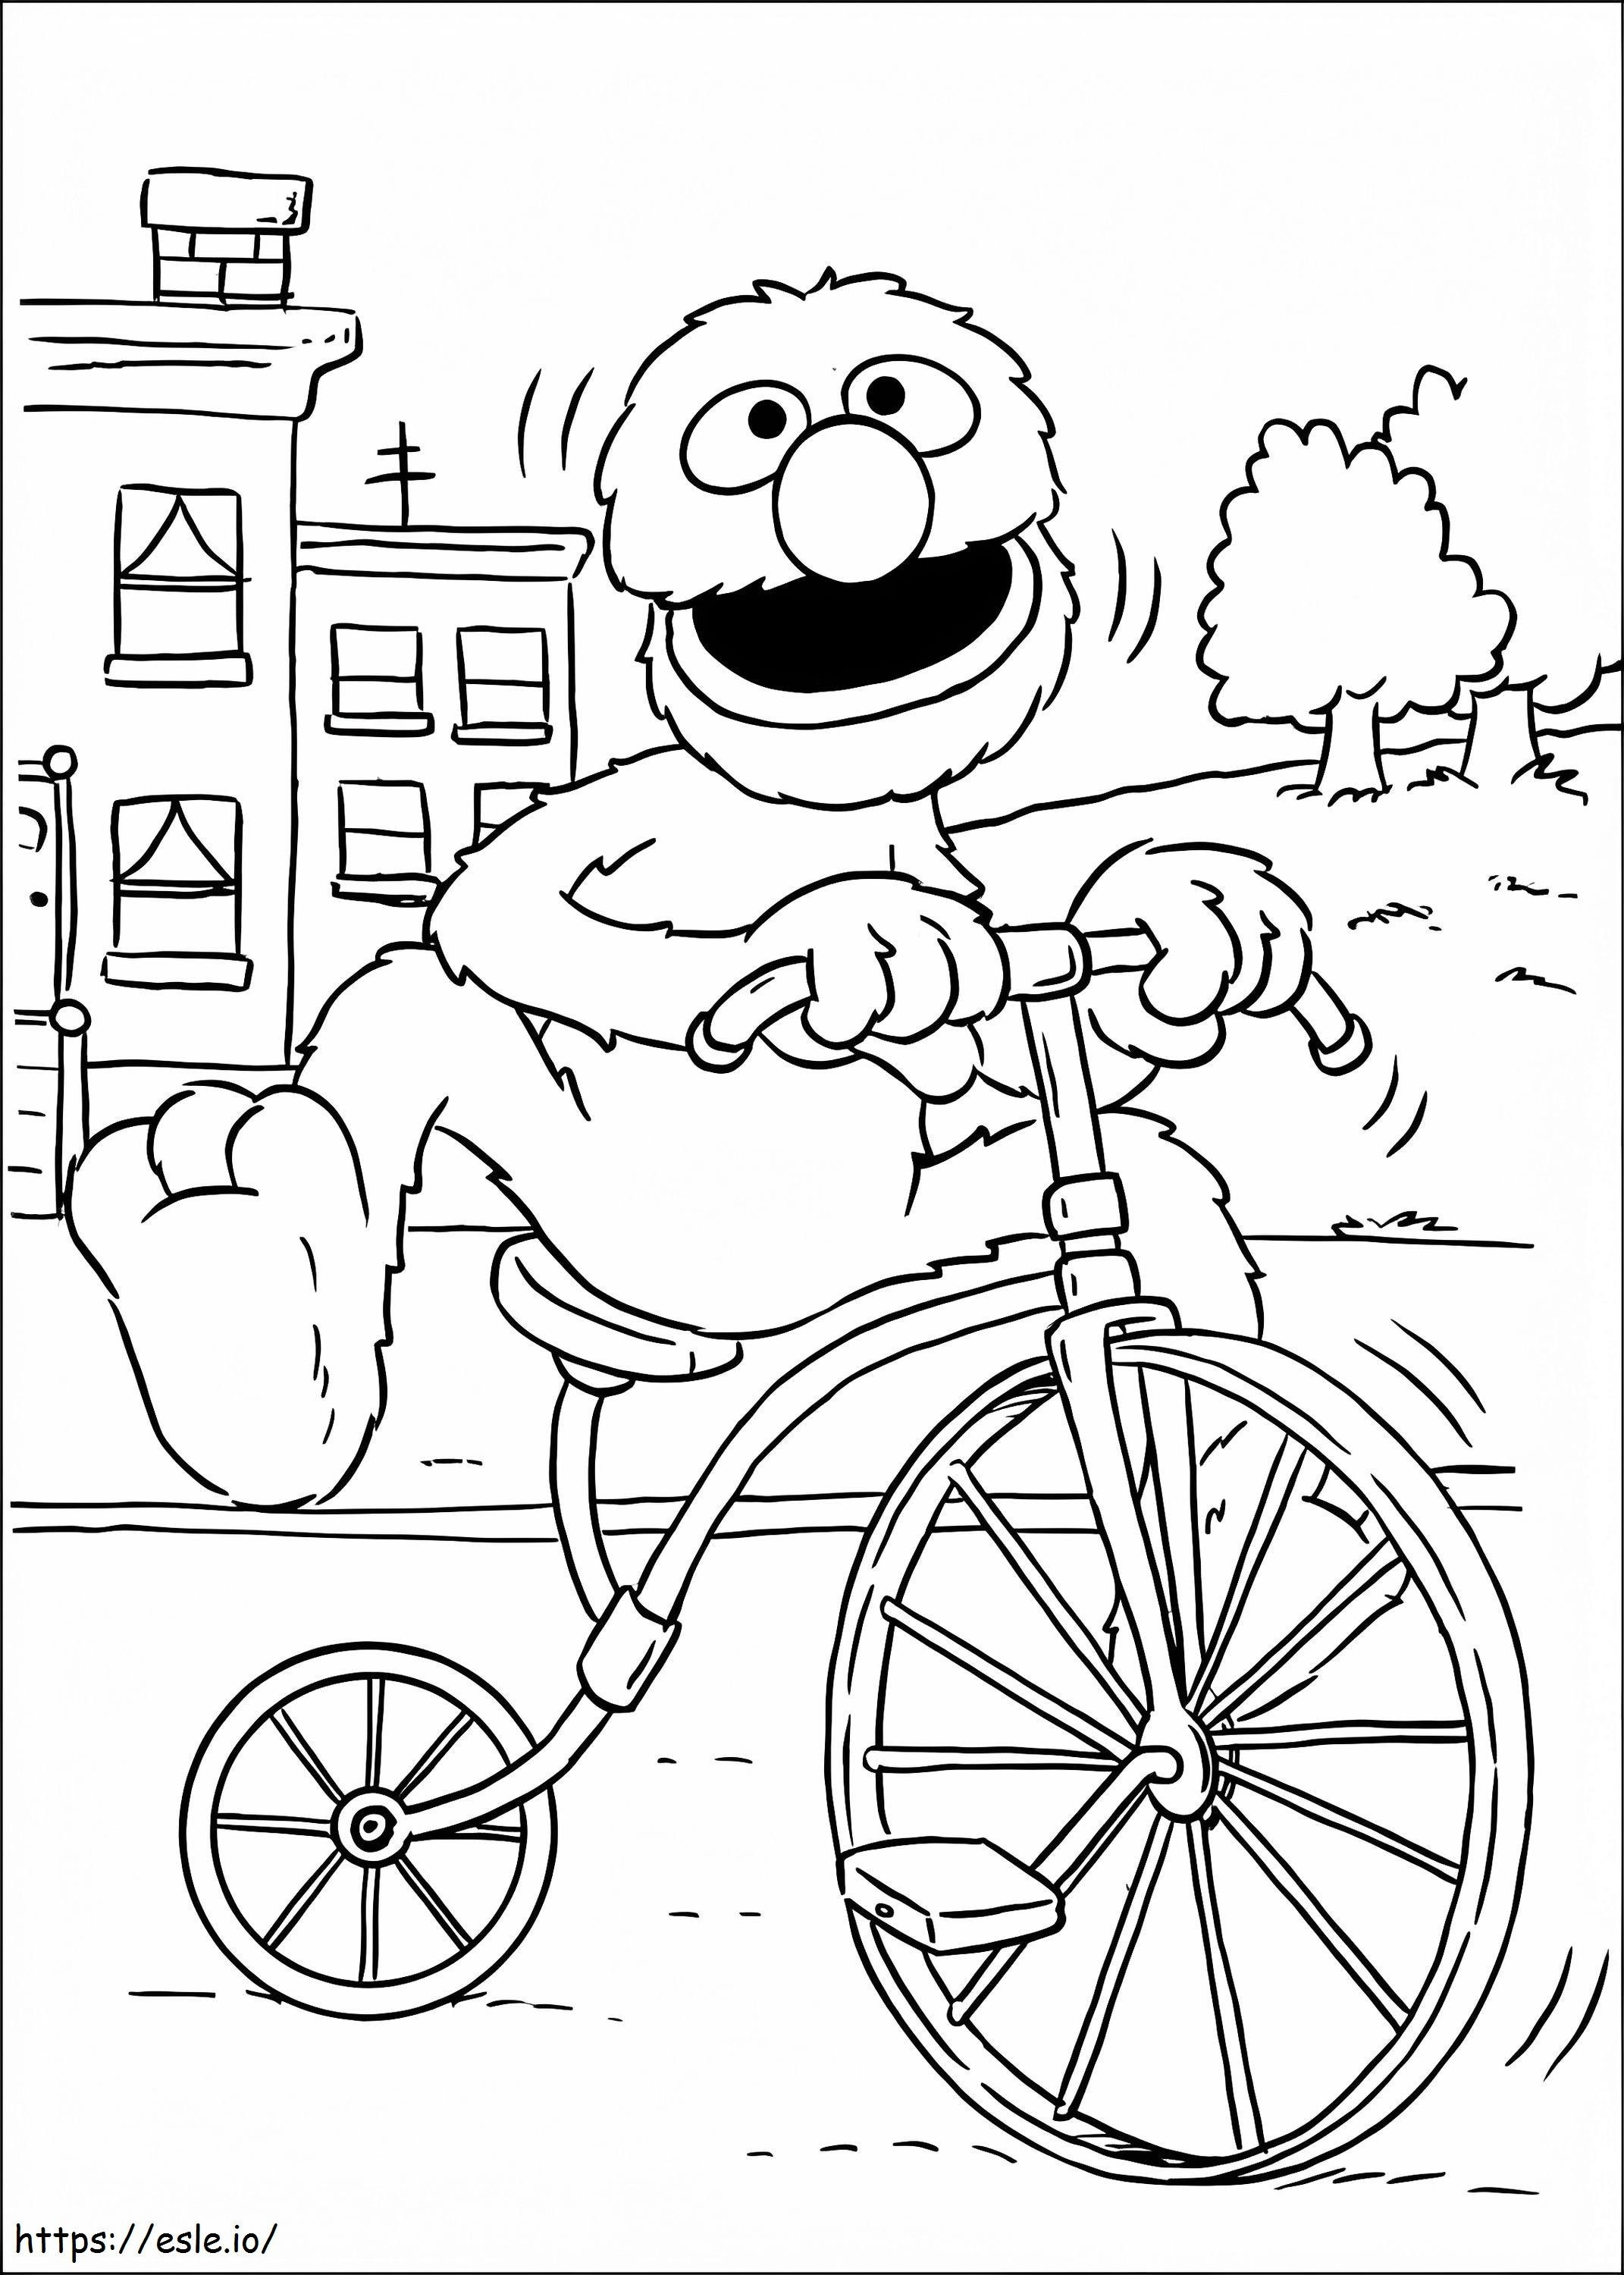 Grover auf dem Fahrrad ausmalbilder